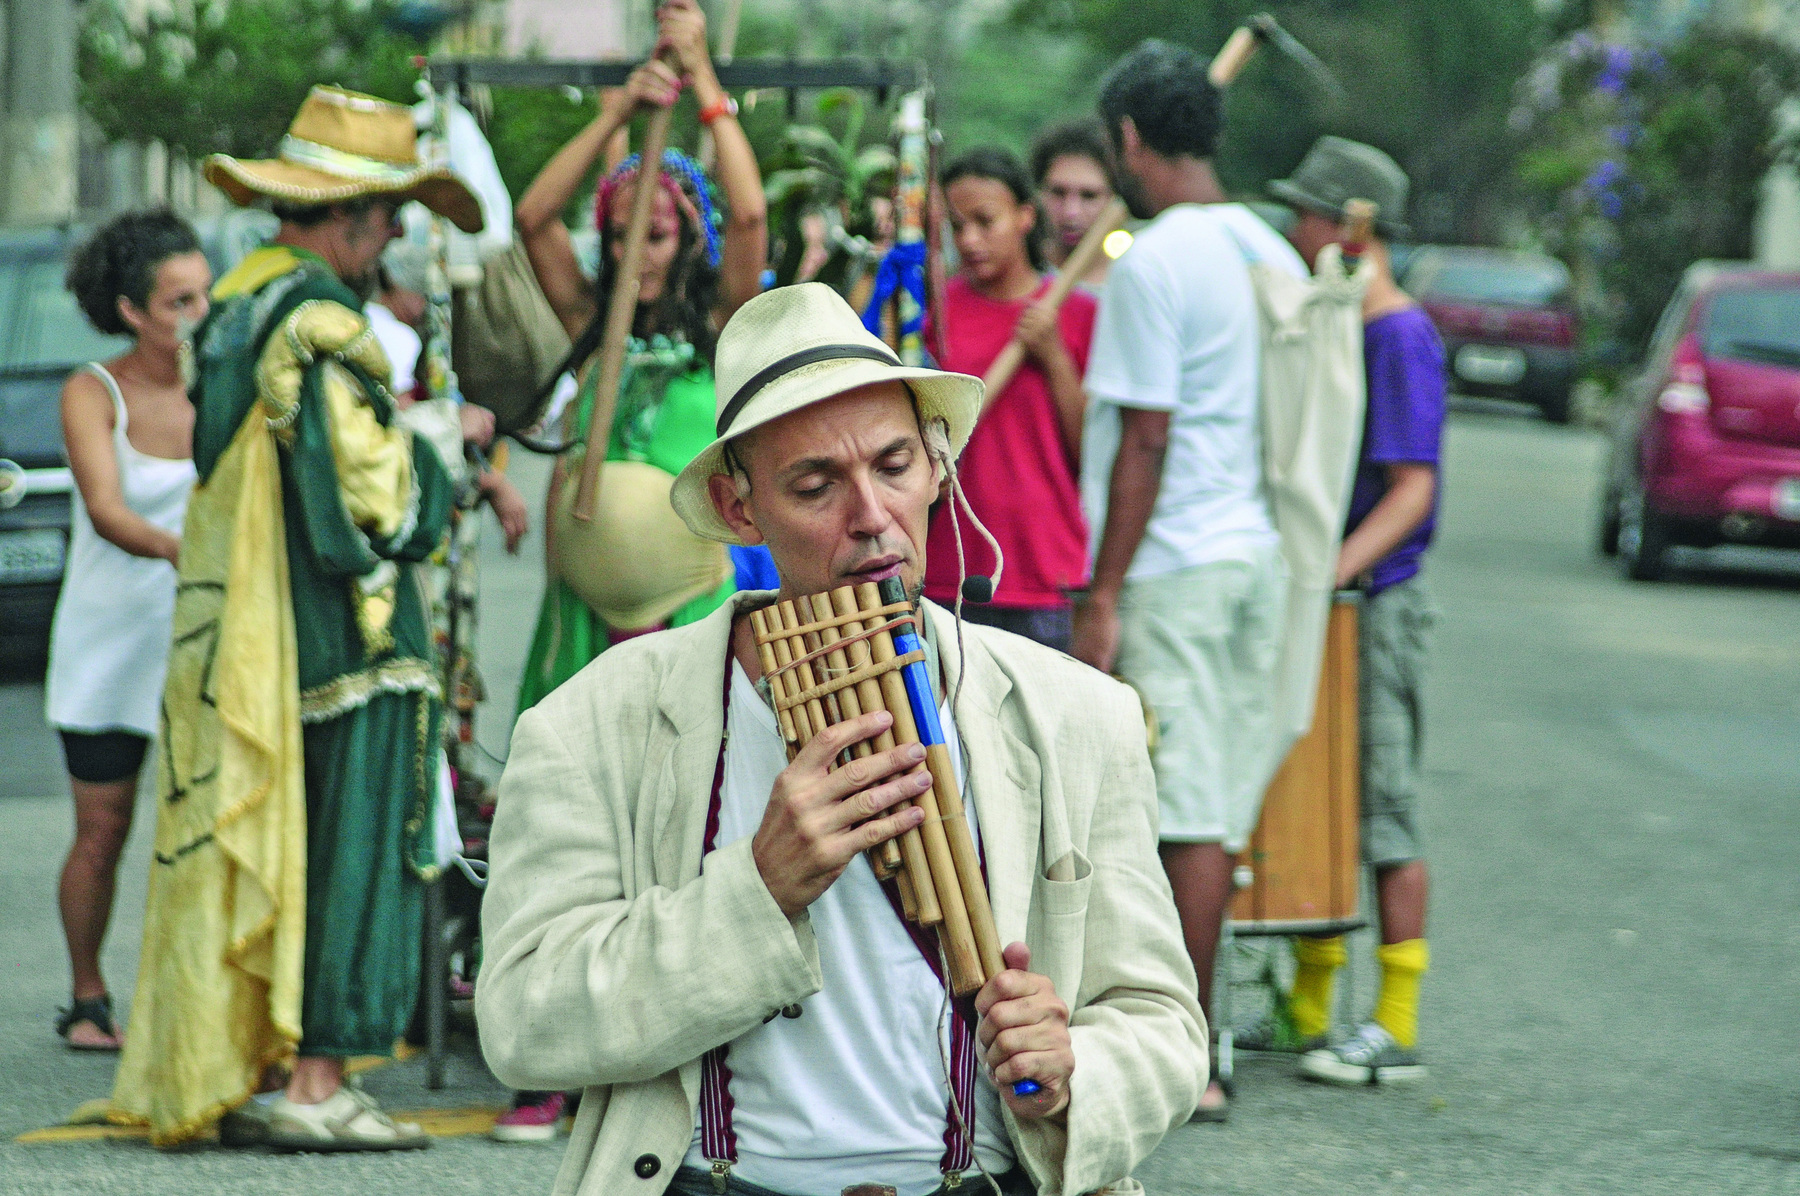 Fotografia. Grupo de atores na rua. Em primeiro plano, um homem de chapéu branco com fita preta, vestido com camiseta e casaco brancos, toca uma flauta de bambu com pequenos cilindros de madeira. Ao fundo, outros atores carregam outros instrumentos musicais.